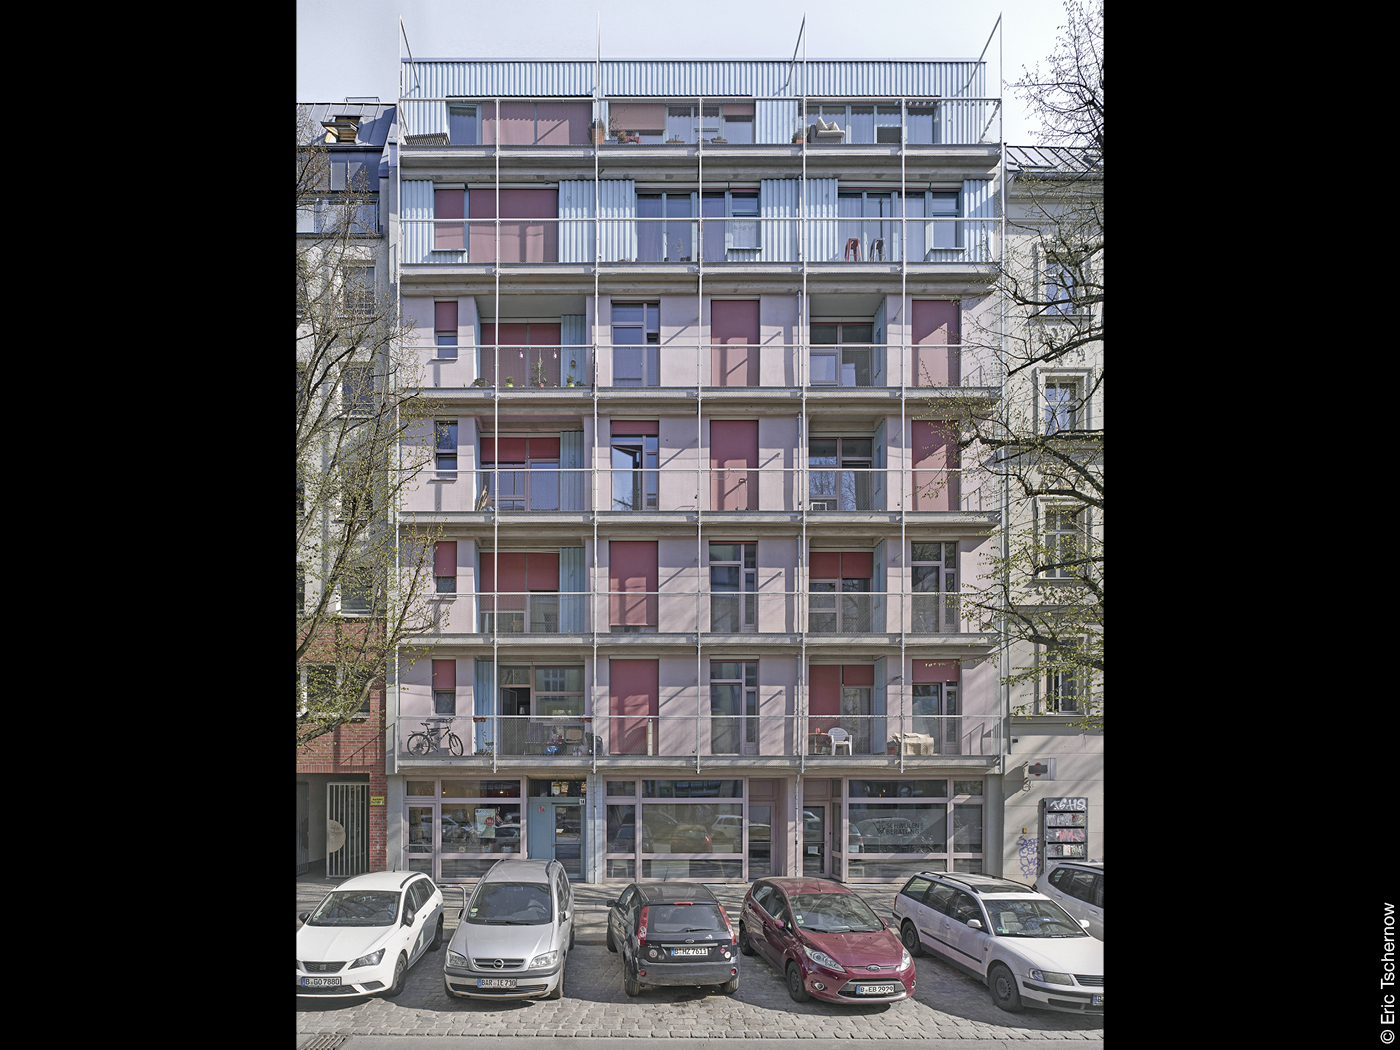 Wohnprojekt Lovo in Berlin mit Balkonen und rosa Fassade